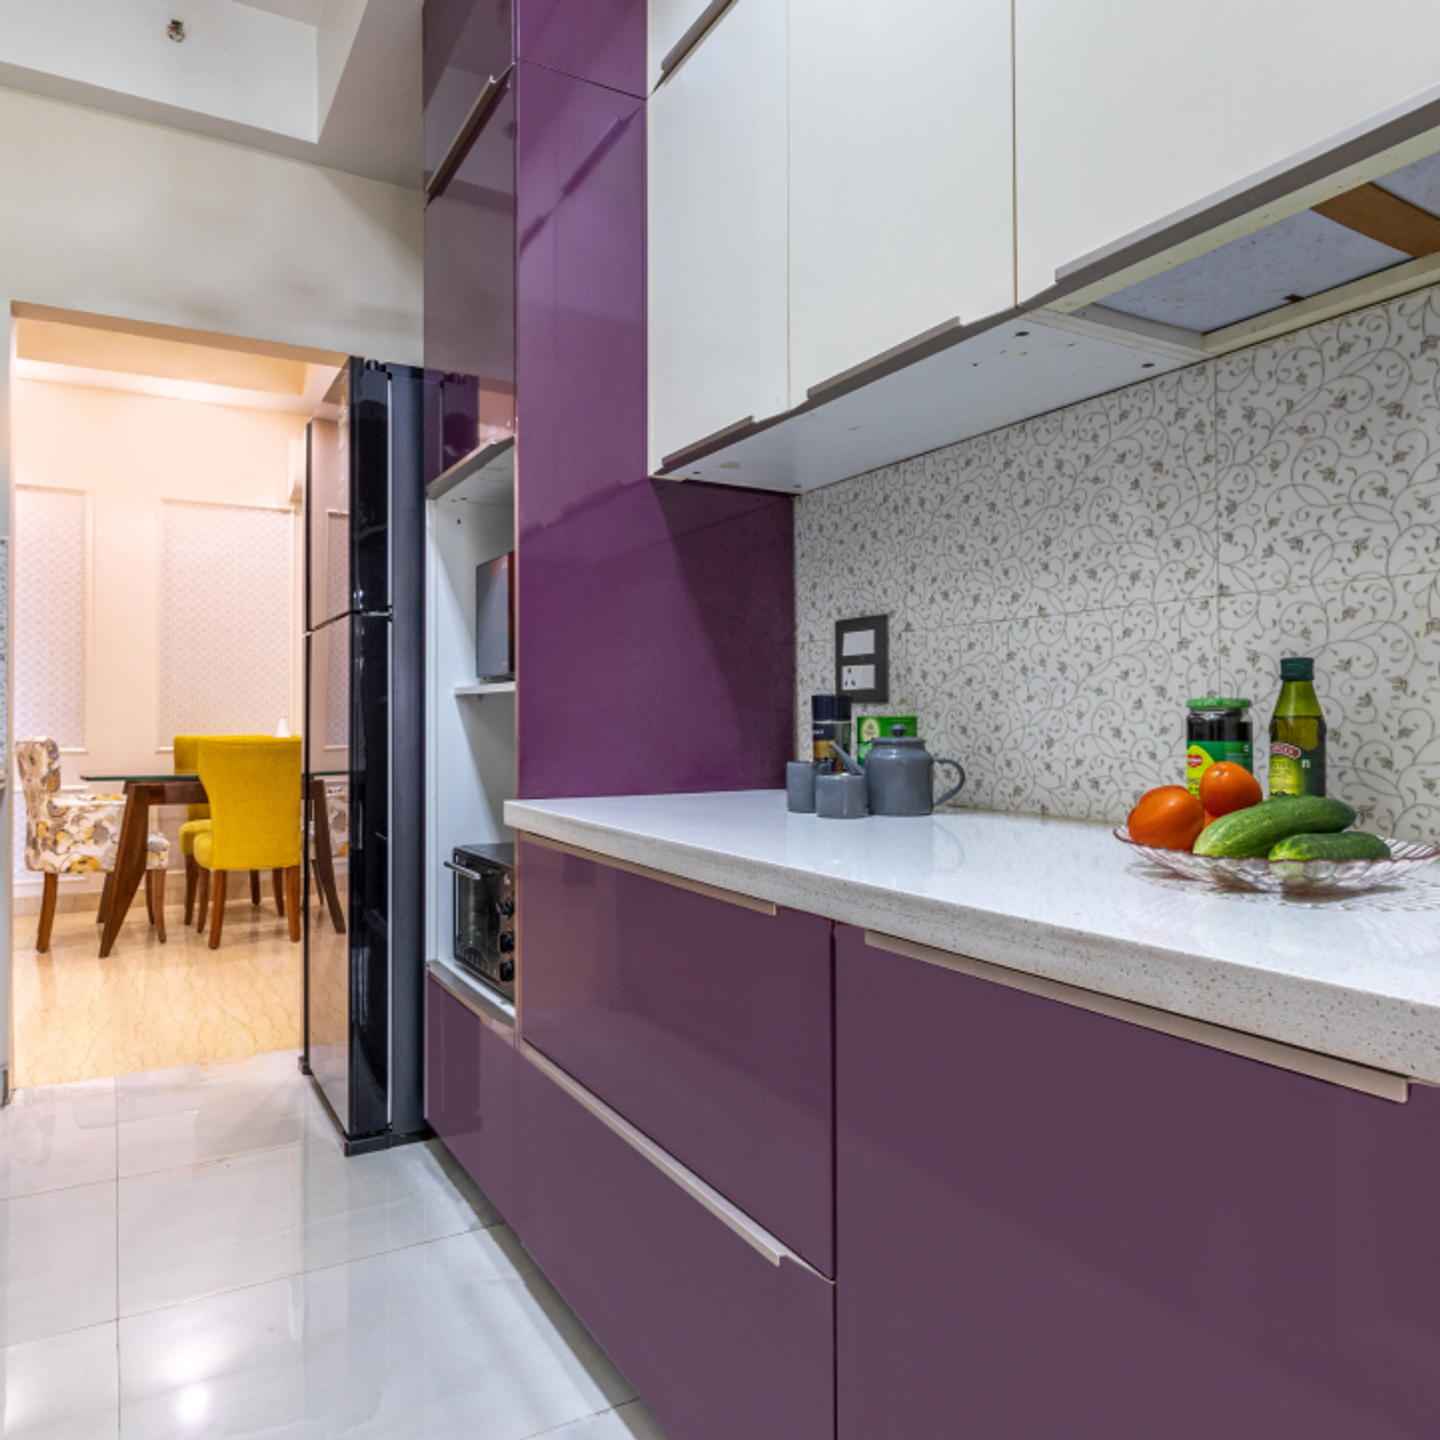 Modern Modular Parallel Kitchen Design With Floral Backsplash Tiles